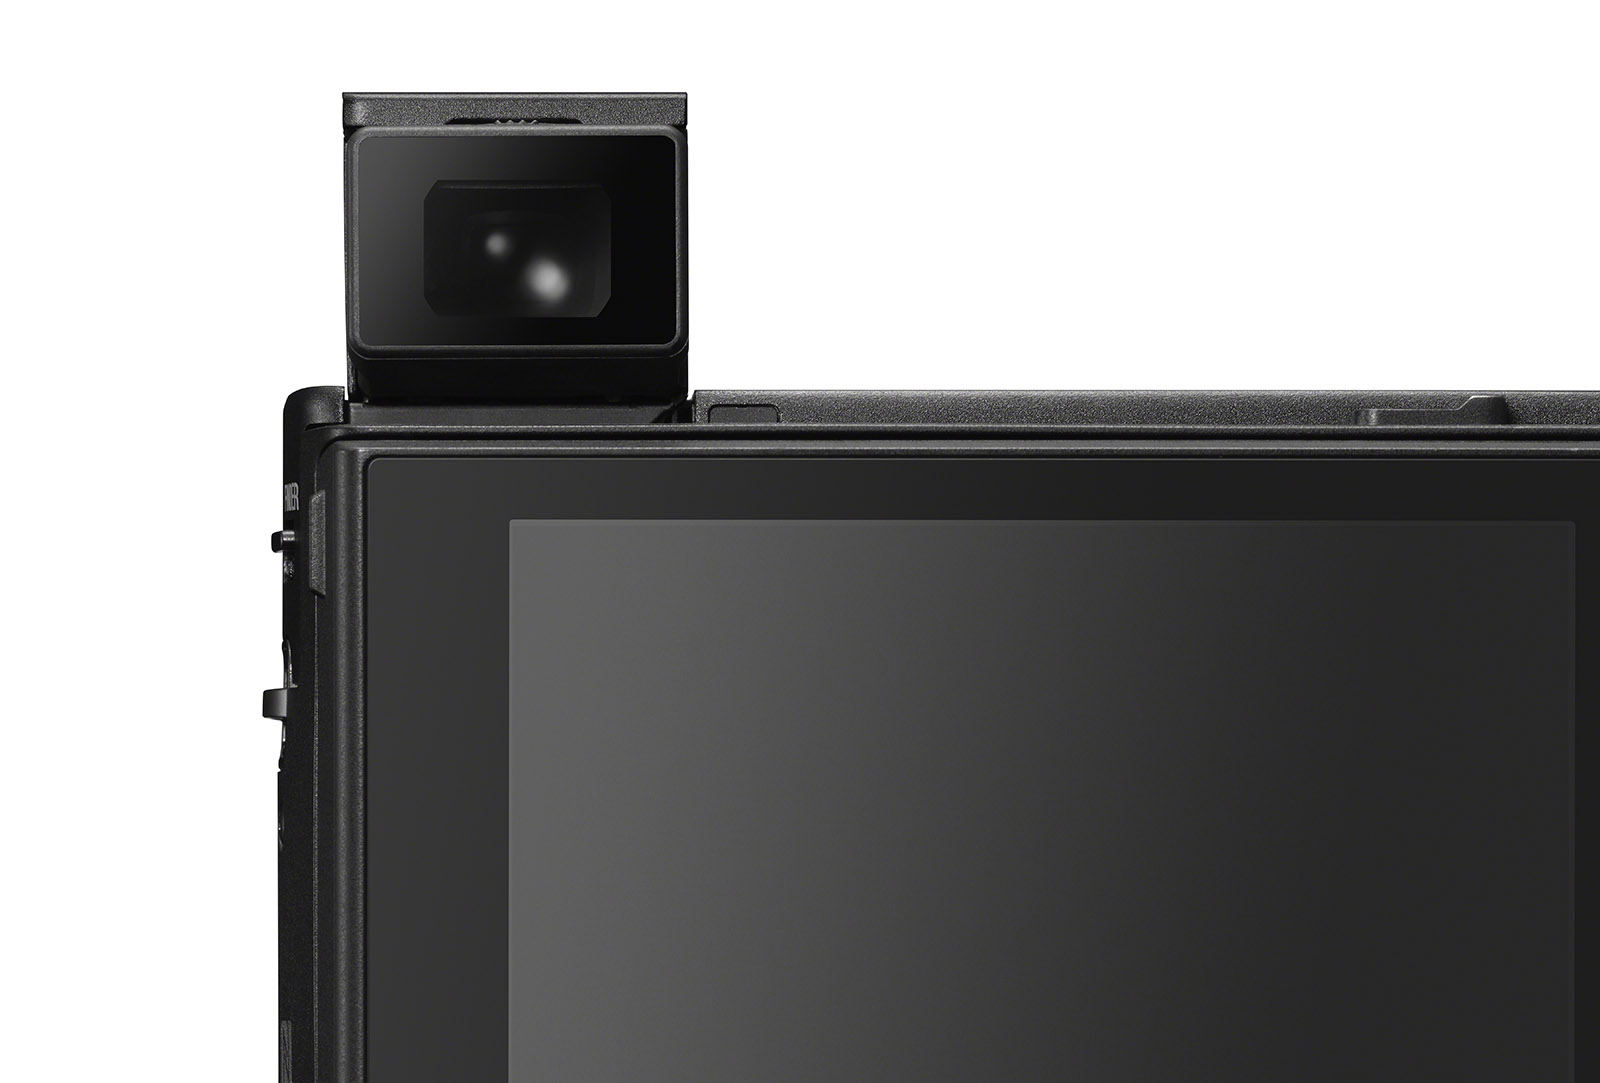 Sony ra mắt máy ảnh compact RX100 VI với chiếc ống kính zoom vô cùng lạ lùng